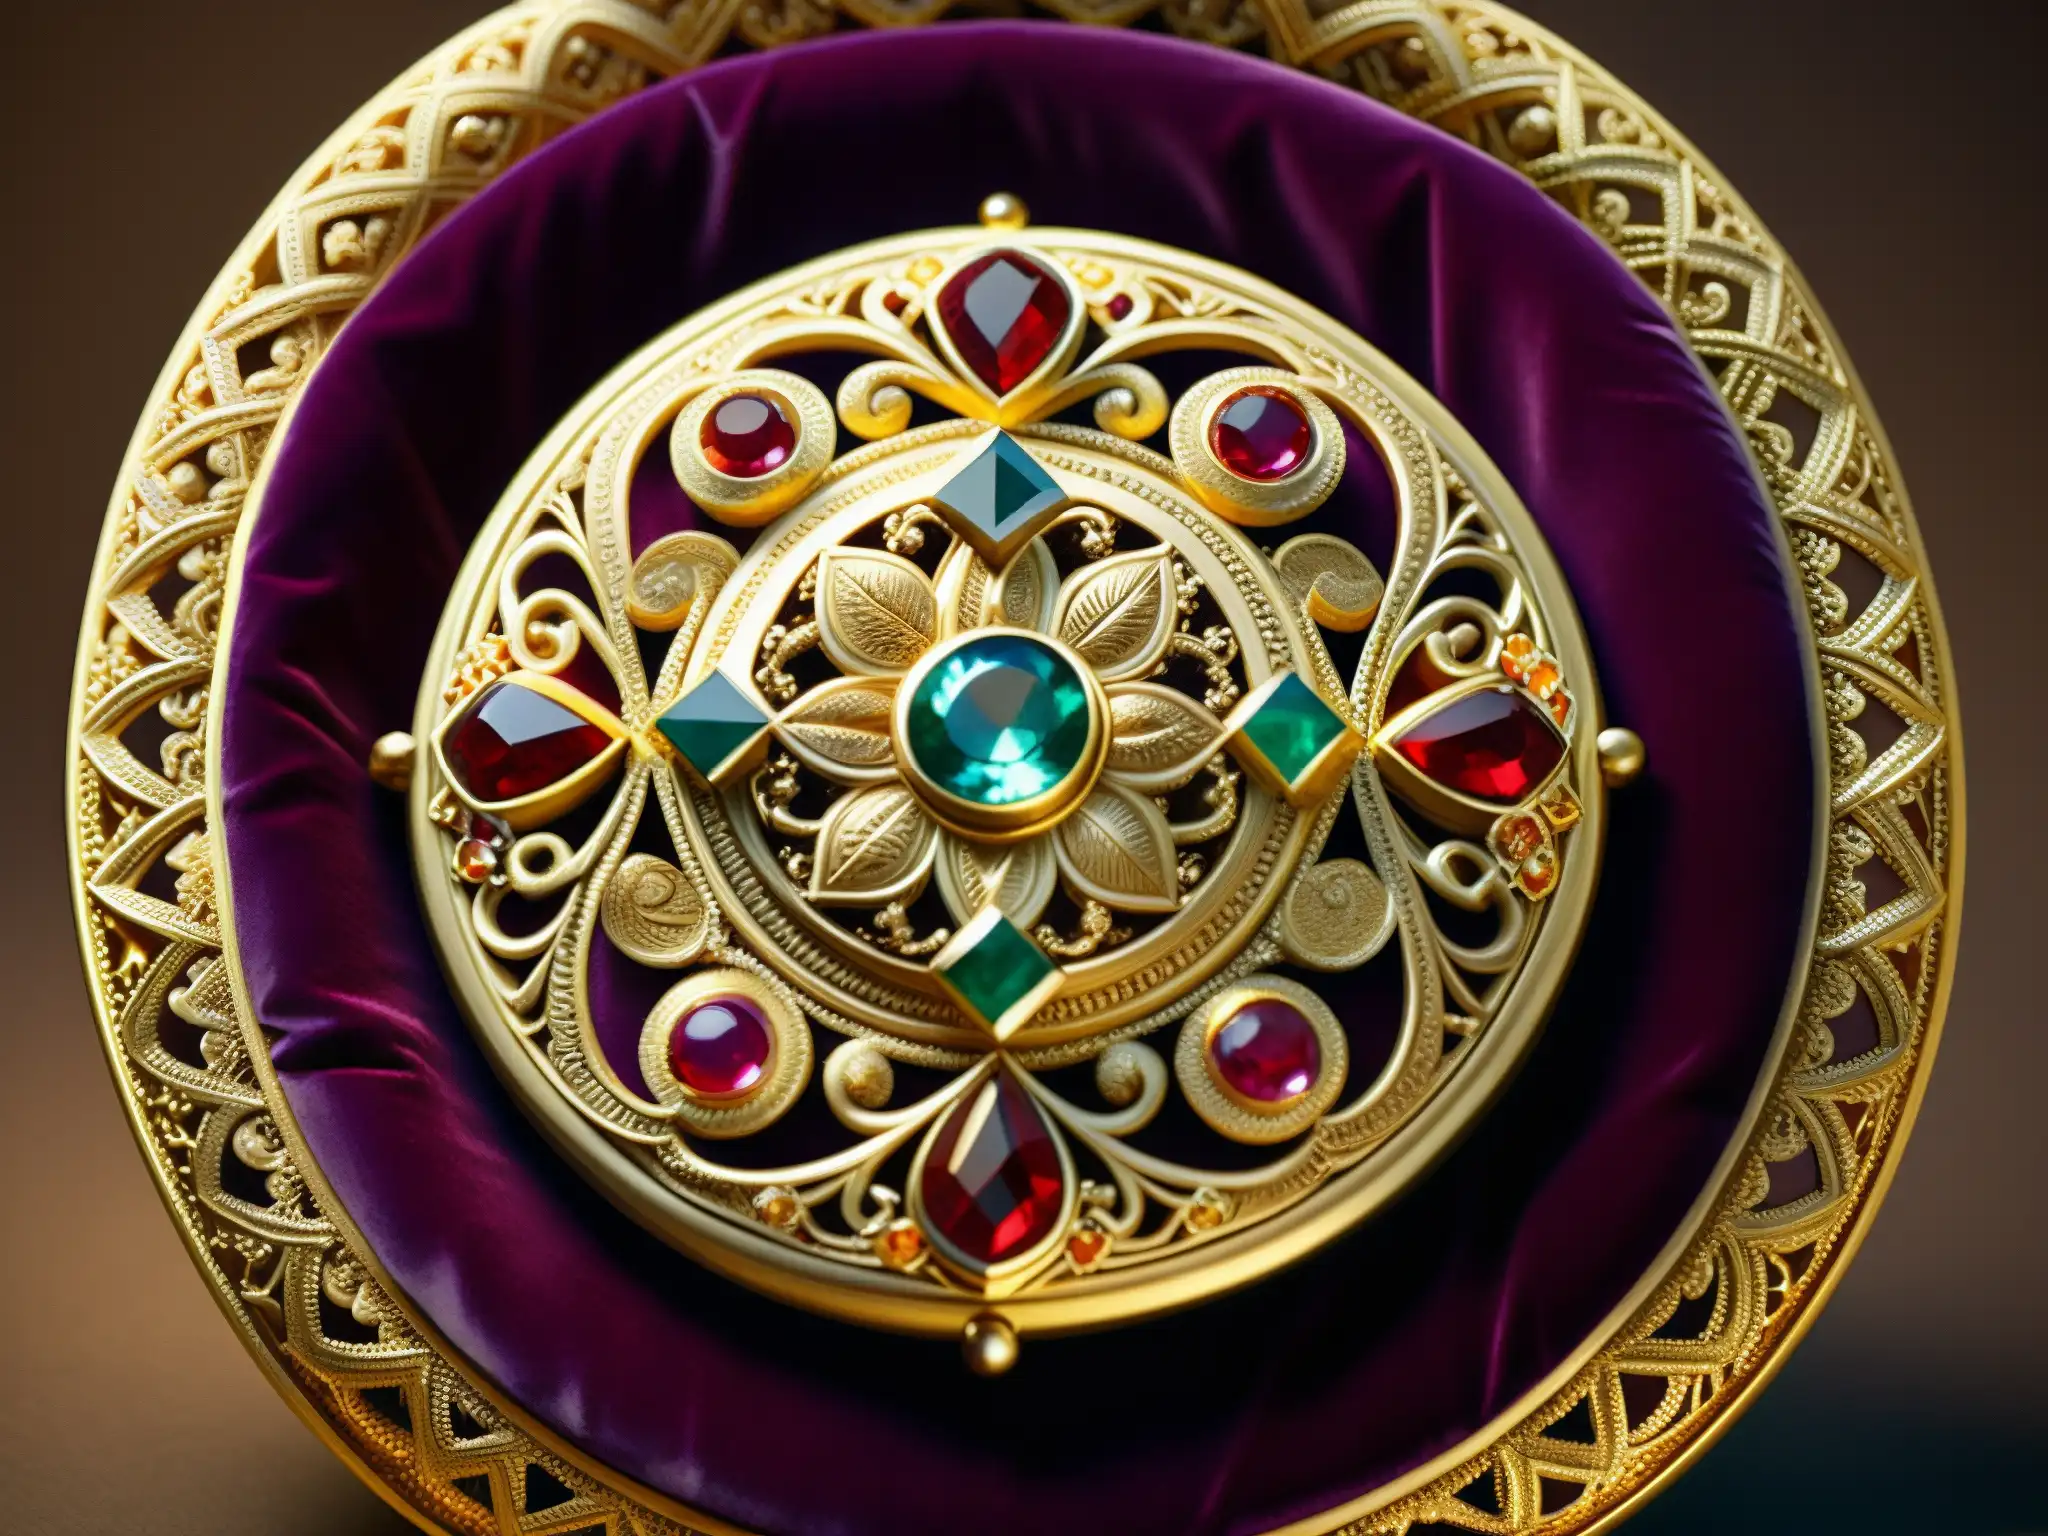 Una reliquia antigua de oro y gemas en un cojín de terciopelo, iluminada por una luz cálida, revela su intrincado tallado y filigrana